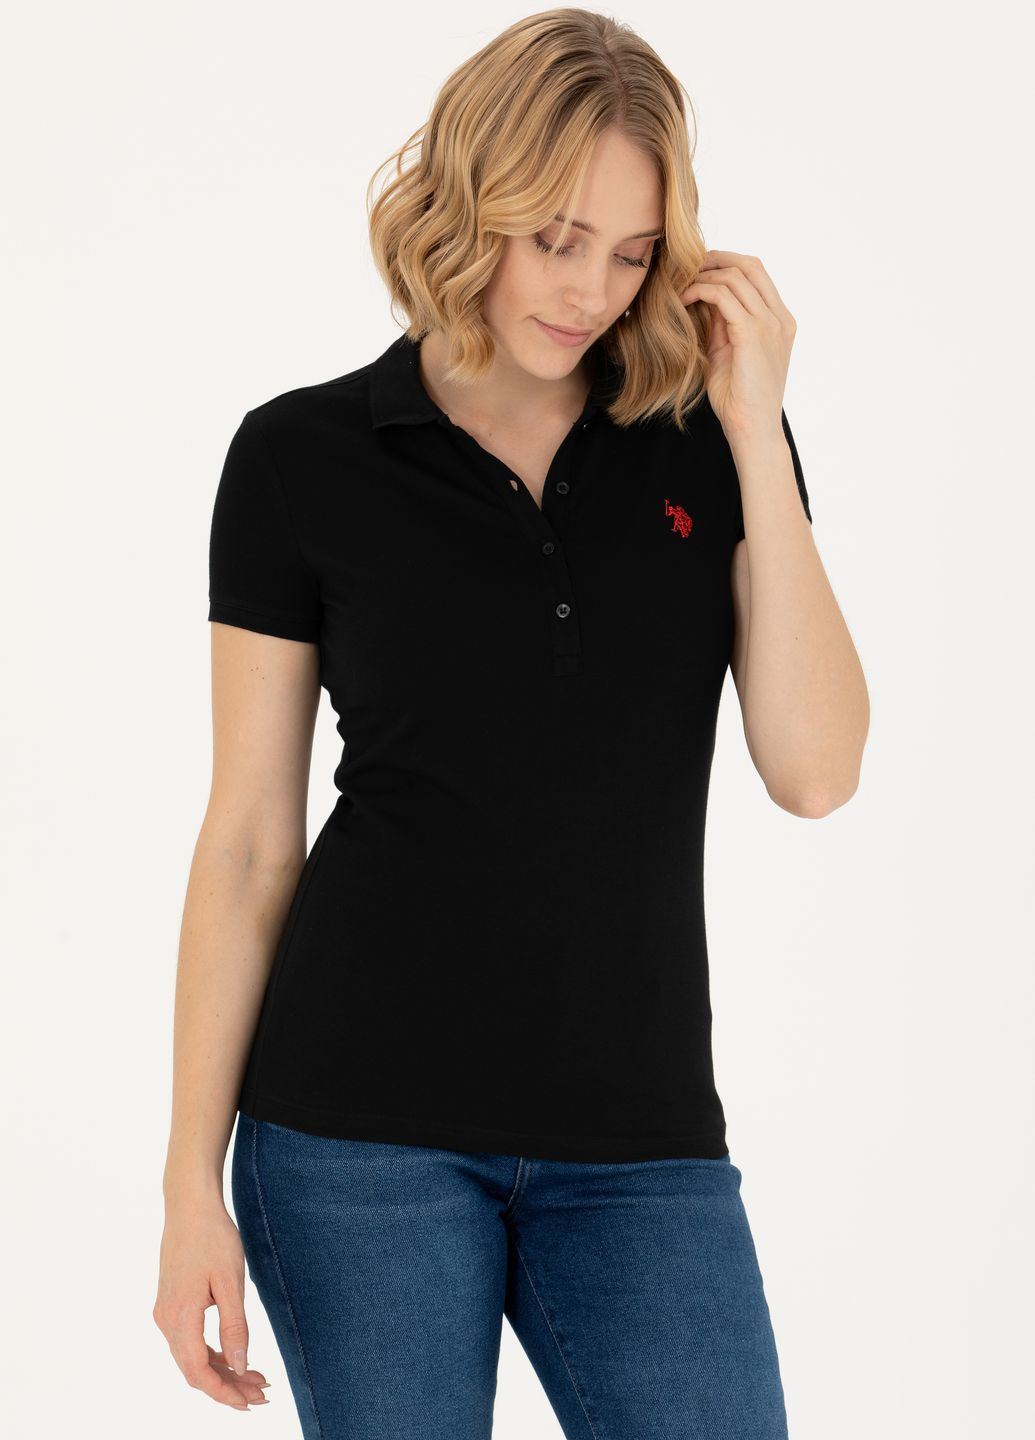 Черная футболка u.s.polo assn женская U.S. Polo Assn.